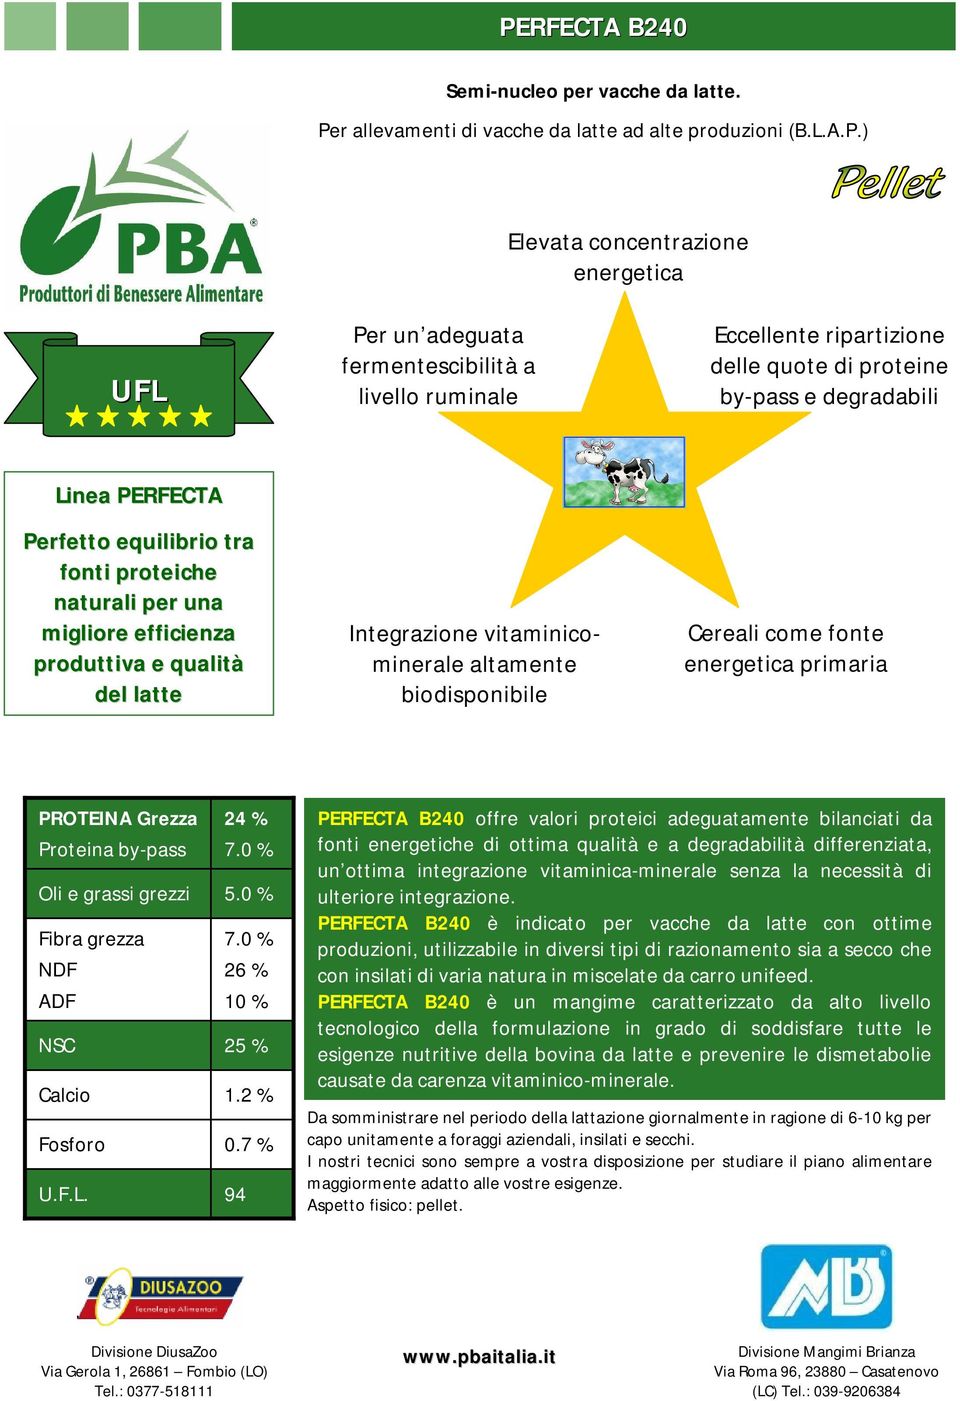 Integrazione vitaminicominerale altamente biodisponibile Cereali come fonte energetica primaria PROTEINA Grezza 24 % 7.0 % 5.0 % 7.0 % 26 % 10 % 25 % 1.2 % 0.